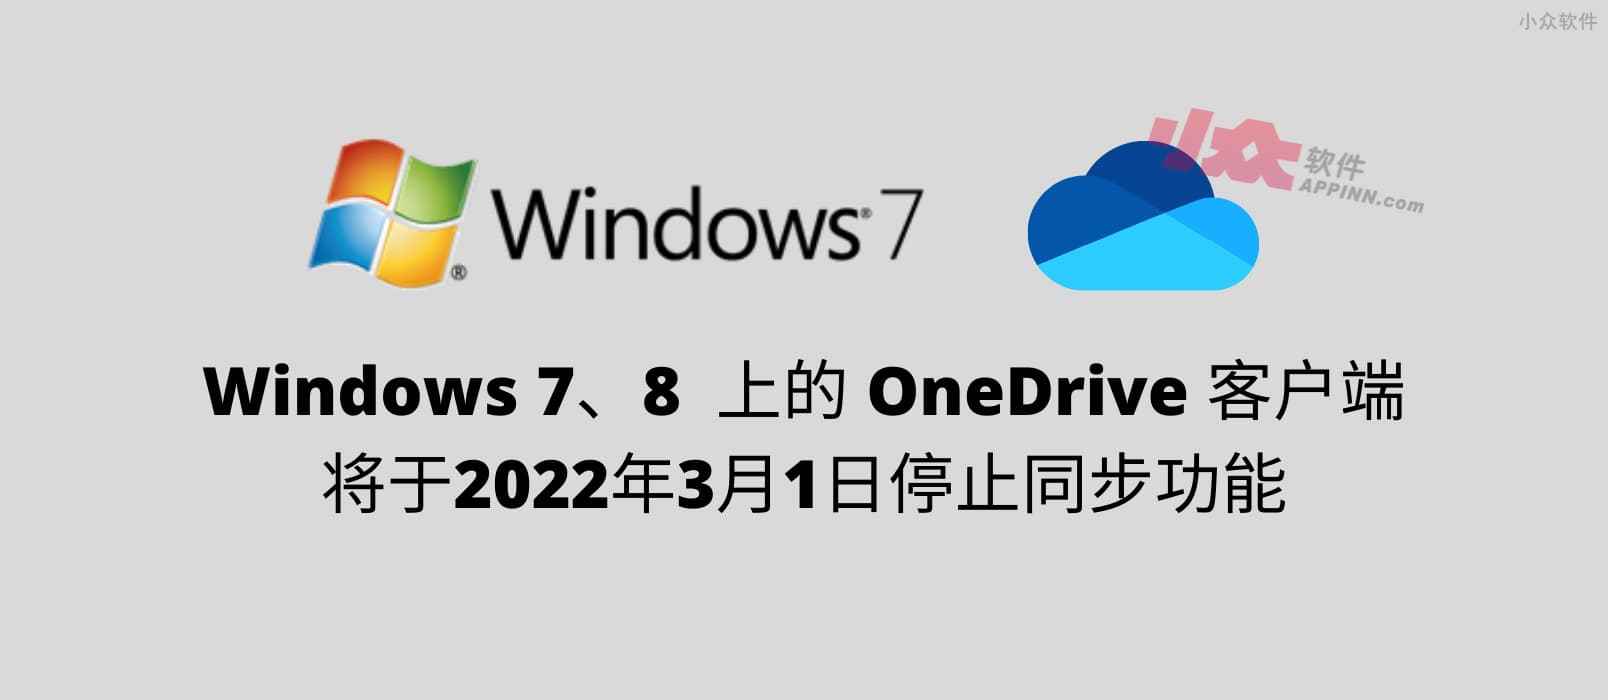 Windows 7、8 上的个人 OneDrive 客户端将于2022年3月1日停止同步 1